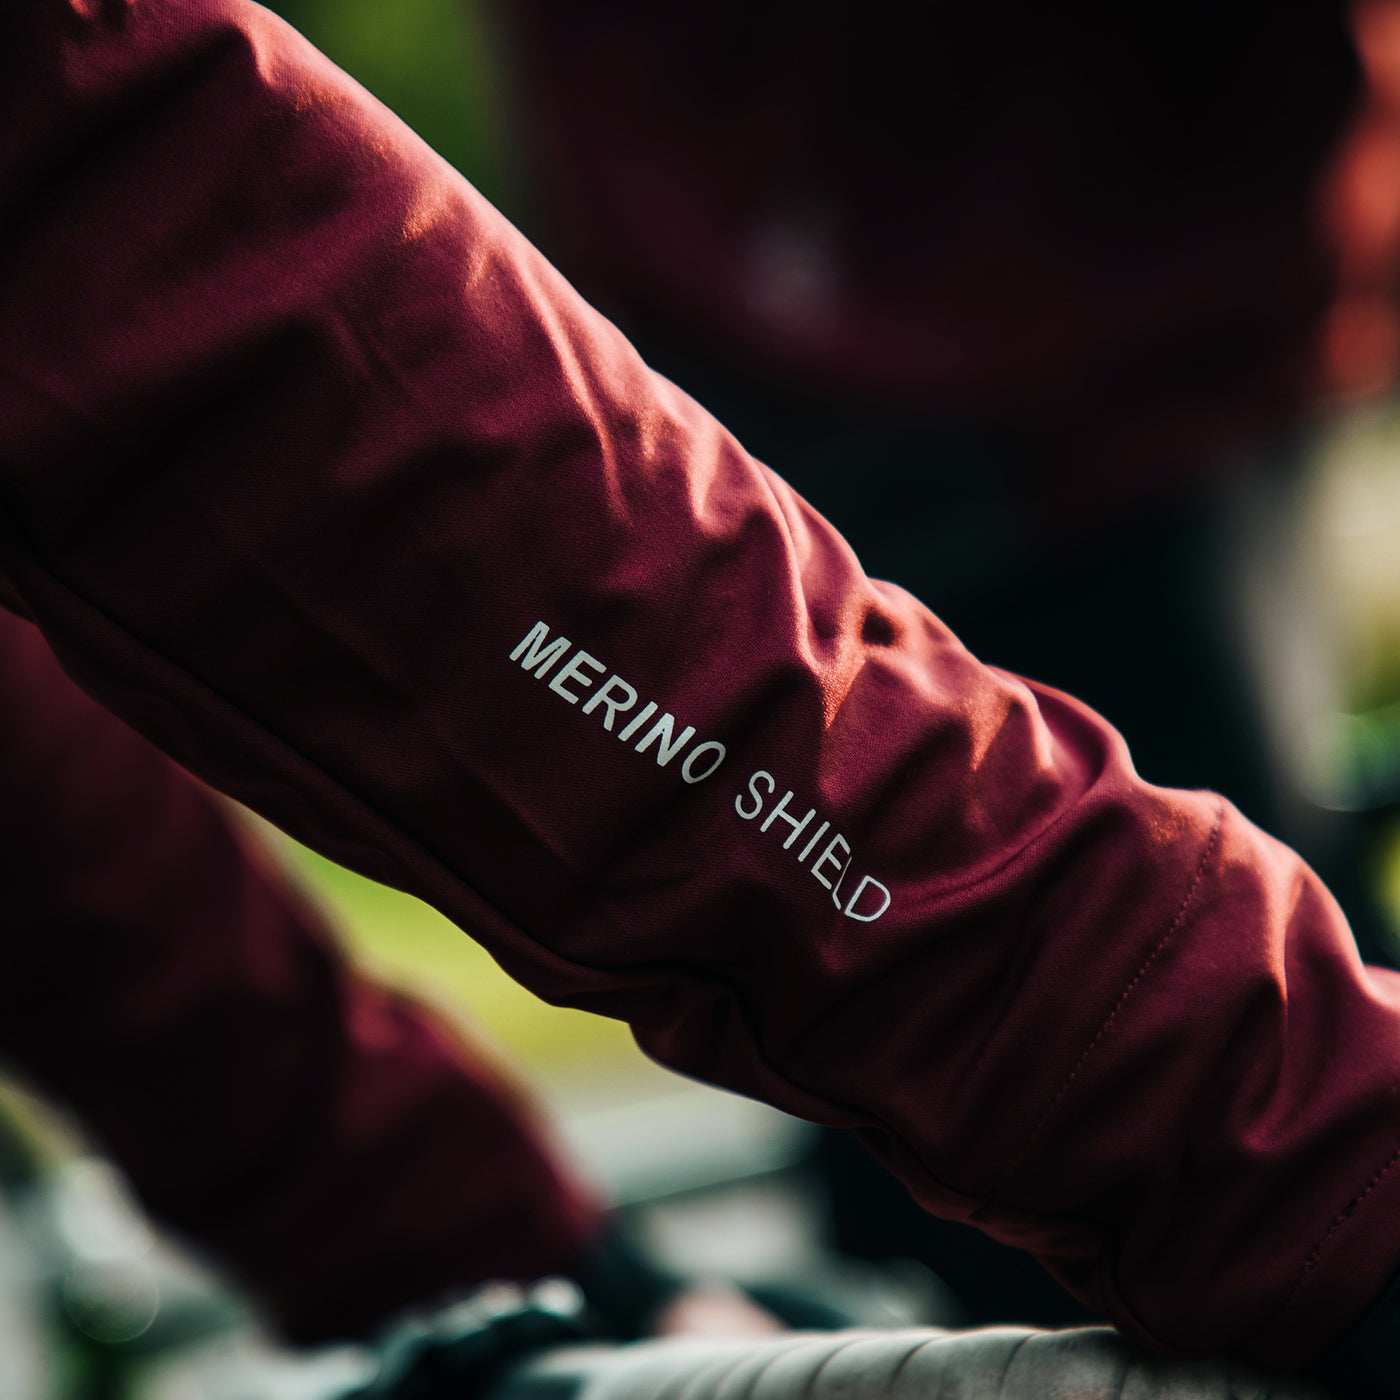 Sigr Gotlandsleden Tour - Deep Red Soft Shell Merino Jacket for Women